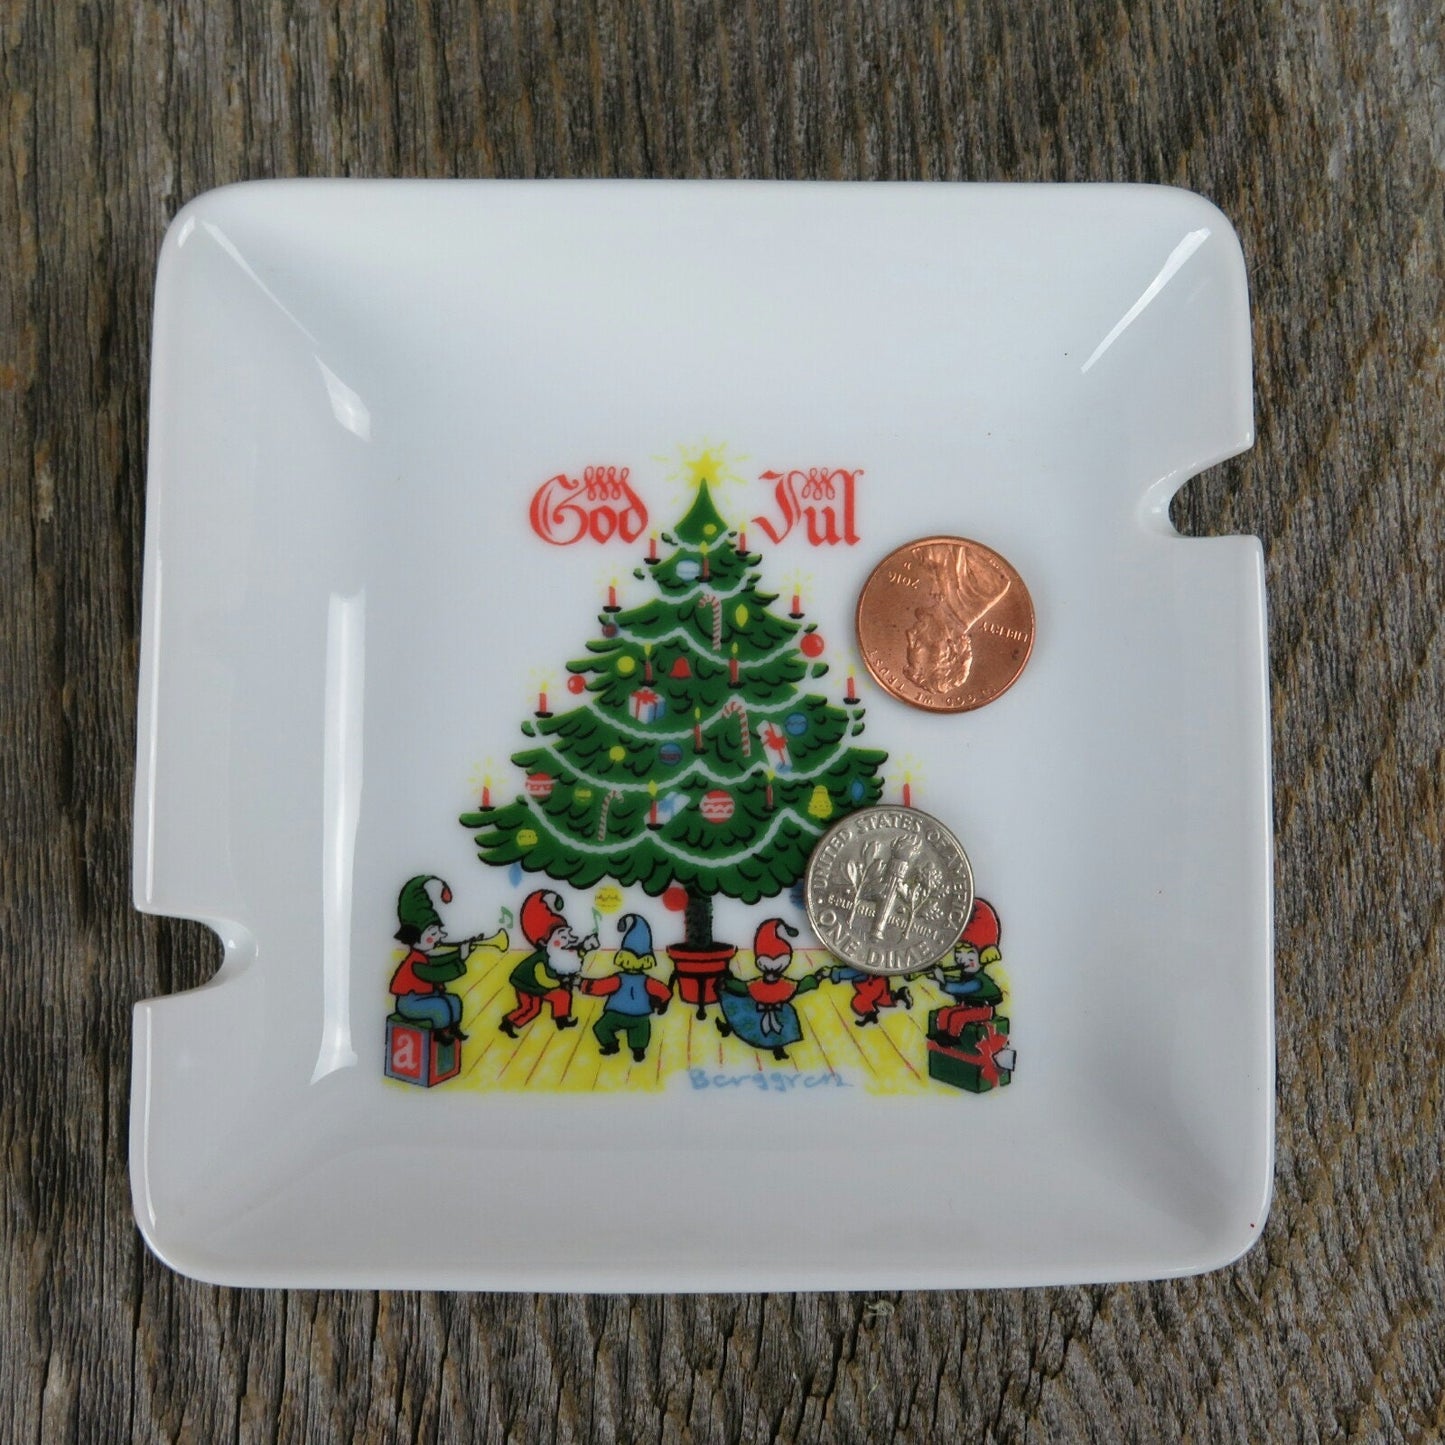 Vintage Christmas Ashtray Dish Berggren "GOD JUL"  Dish Bowl Ashtray Relish Tree Elves